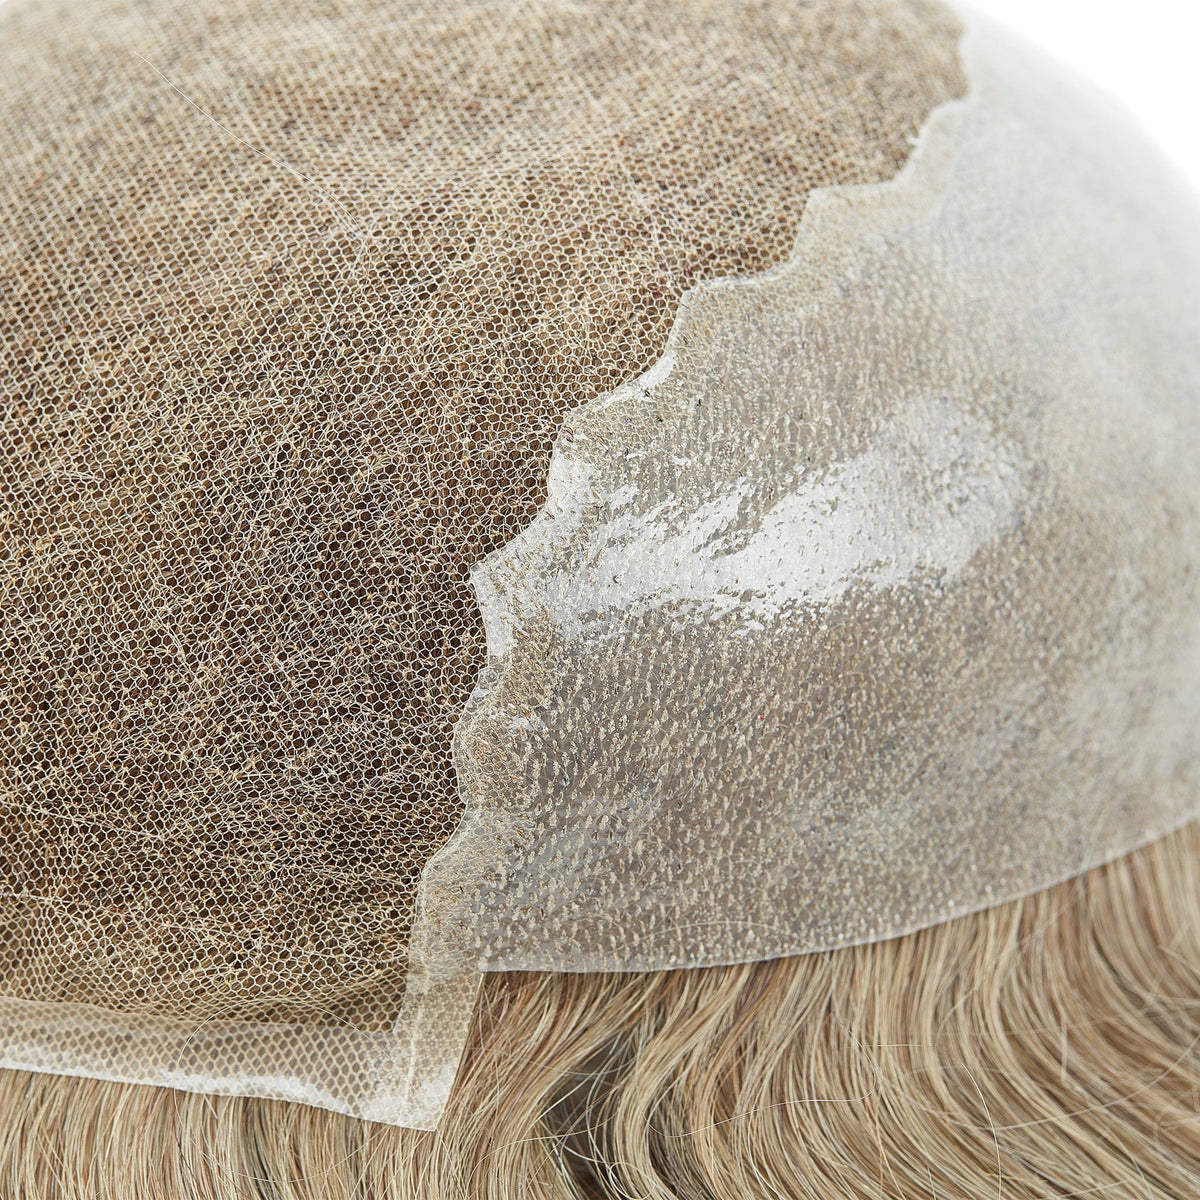 Toupets aus französischer Spitze mit Hautrückseite und -seiten | Herren-Haarteile im Q6-Stil